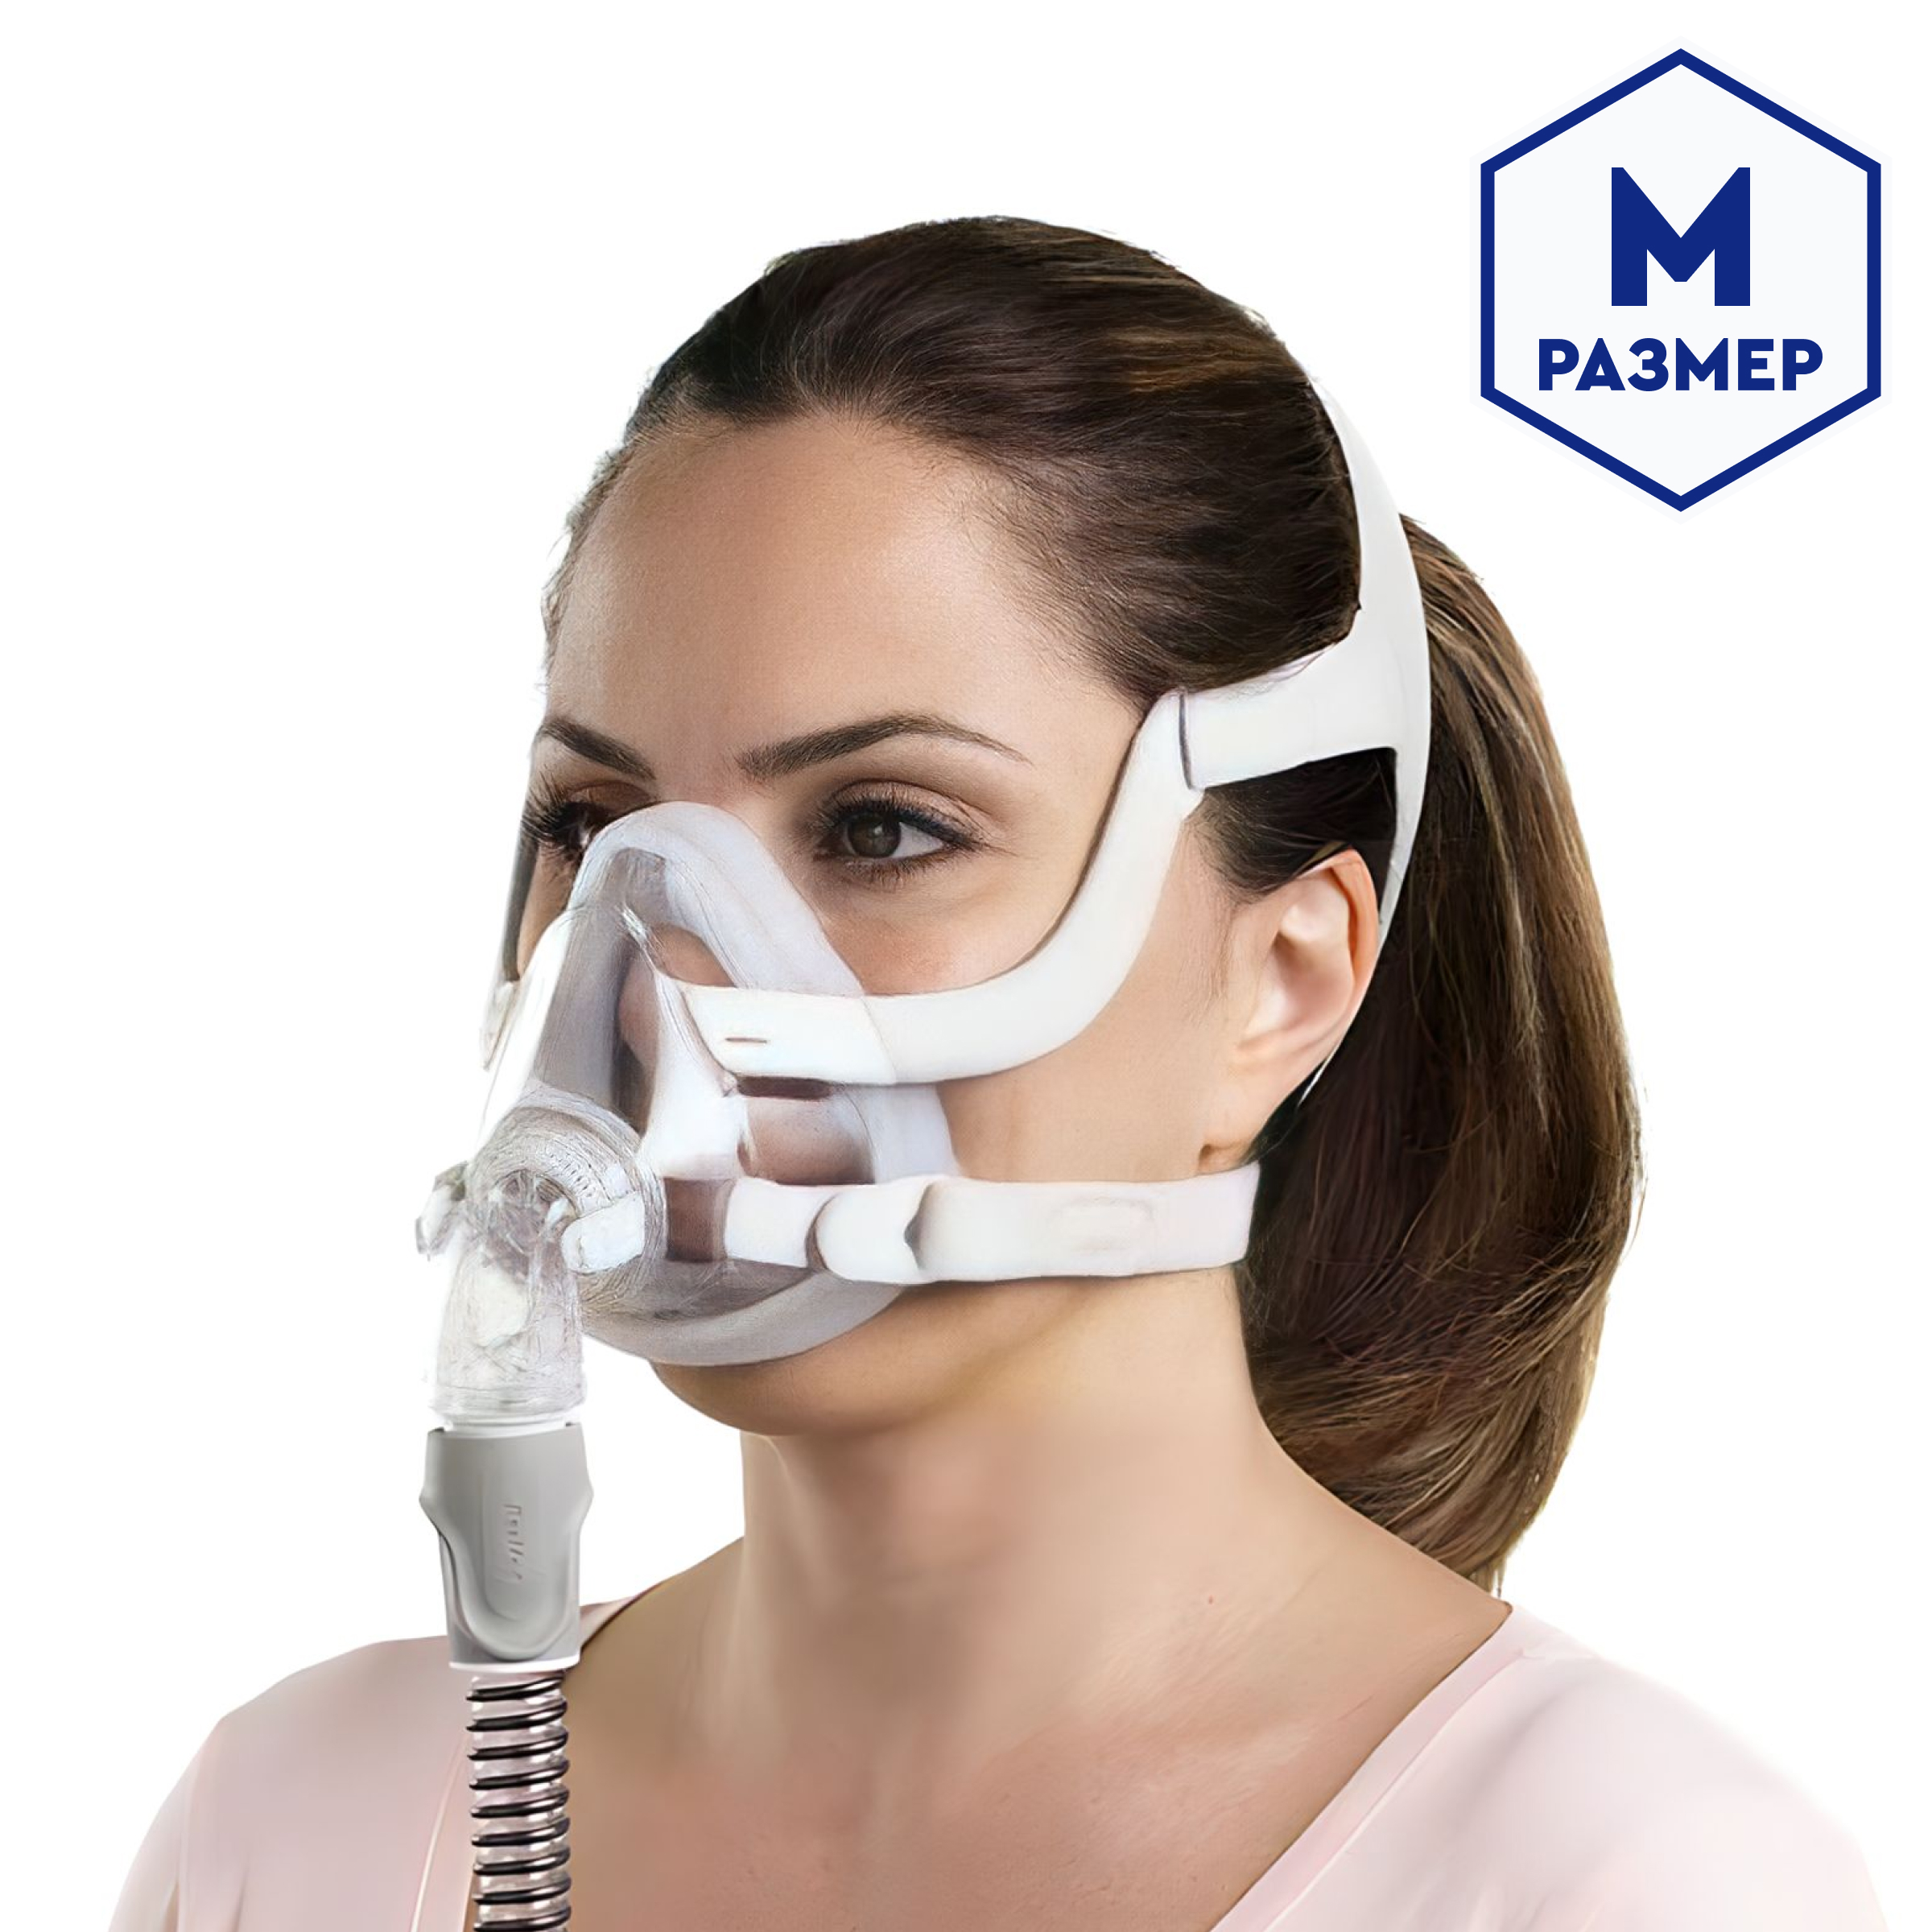 Маска ResMed дыхательная полнолицевая (AIRFIT F20, M)  от интернет-магазина trimm.store